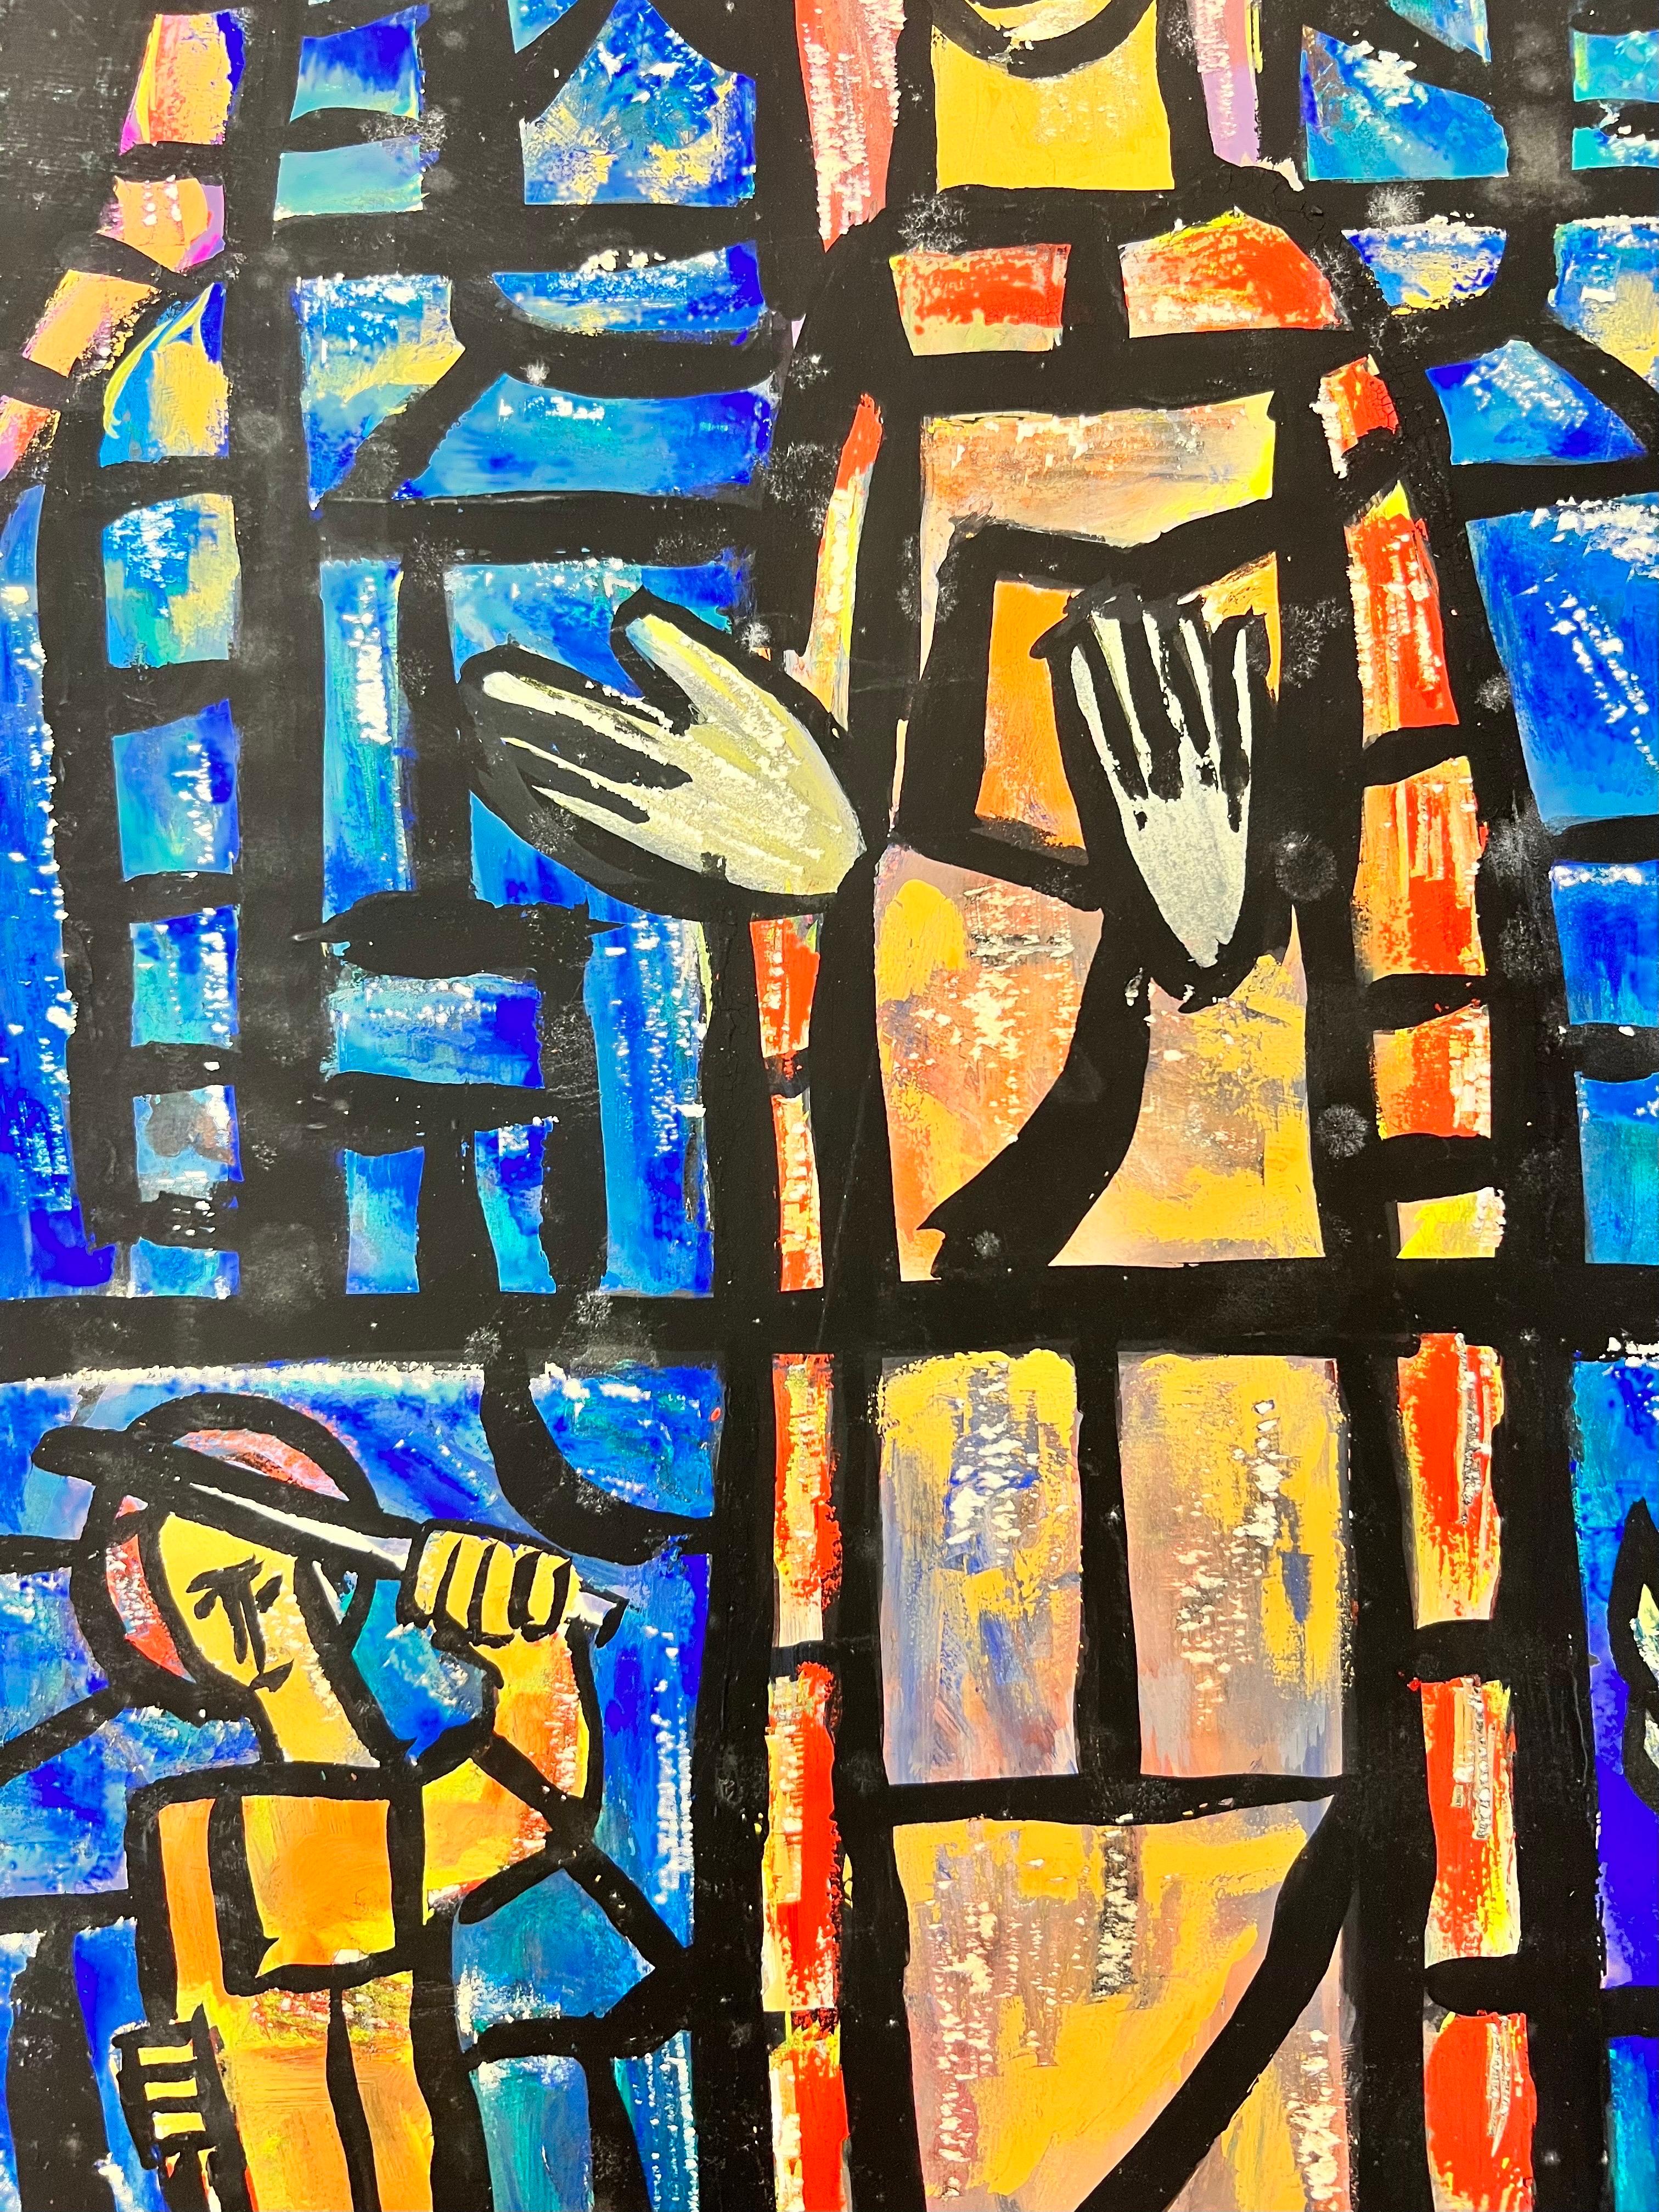 Modernistische/kubistische Malerei der 1950er Jahre - Abstraktes Church's Stained Glass Window 1